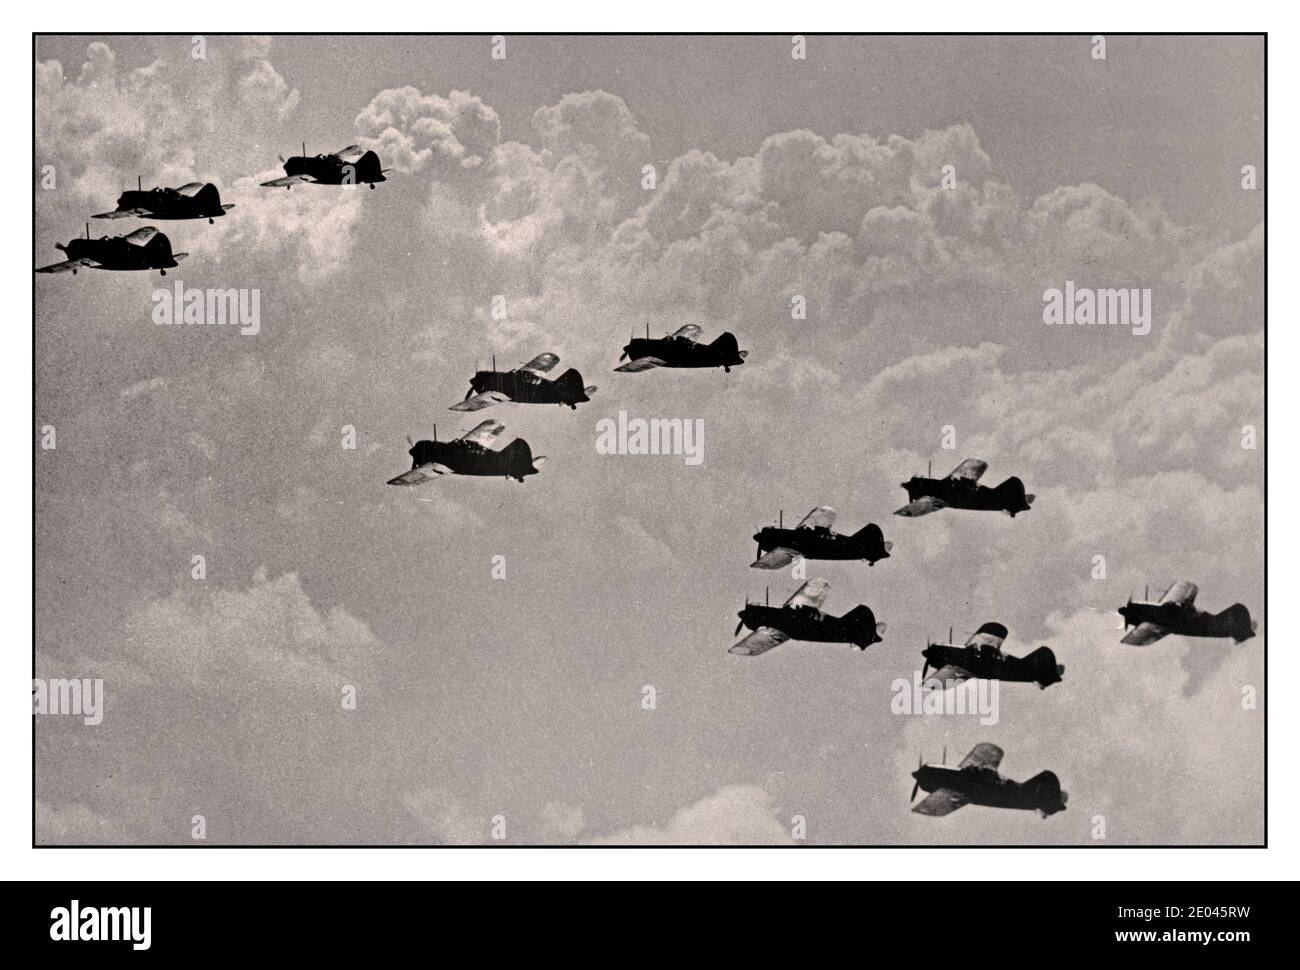 WW2 Archive amerikanische Kampfflugzeuge über Malaya amerikanische Kampfflugzeuge sind in Malaya angekommen und die Montage wurde mit hoher Geschwindigkeit fortgesetzt und dies sind erste Fotos von Brewster Buffalo Kämpfern, die in Formation in Malaya fliegen. Amerikanische Kampfflugzeuge über Malaya. Anbieter Namen Vereinigte Staaten. Büro für Notfallmanagement. [1941 oder 1942] Weltkrieg, 1939-1945--Luftoperationen--amerikanisch--Malaysia--Malaya - Buffalo (Jagdflugzeug)--1940-1950 - Jagdflugzeuge--amerikanisch--Malaysia--Malaya--1940-1950 Luftaufnahmen- Stockfoto